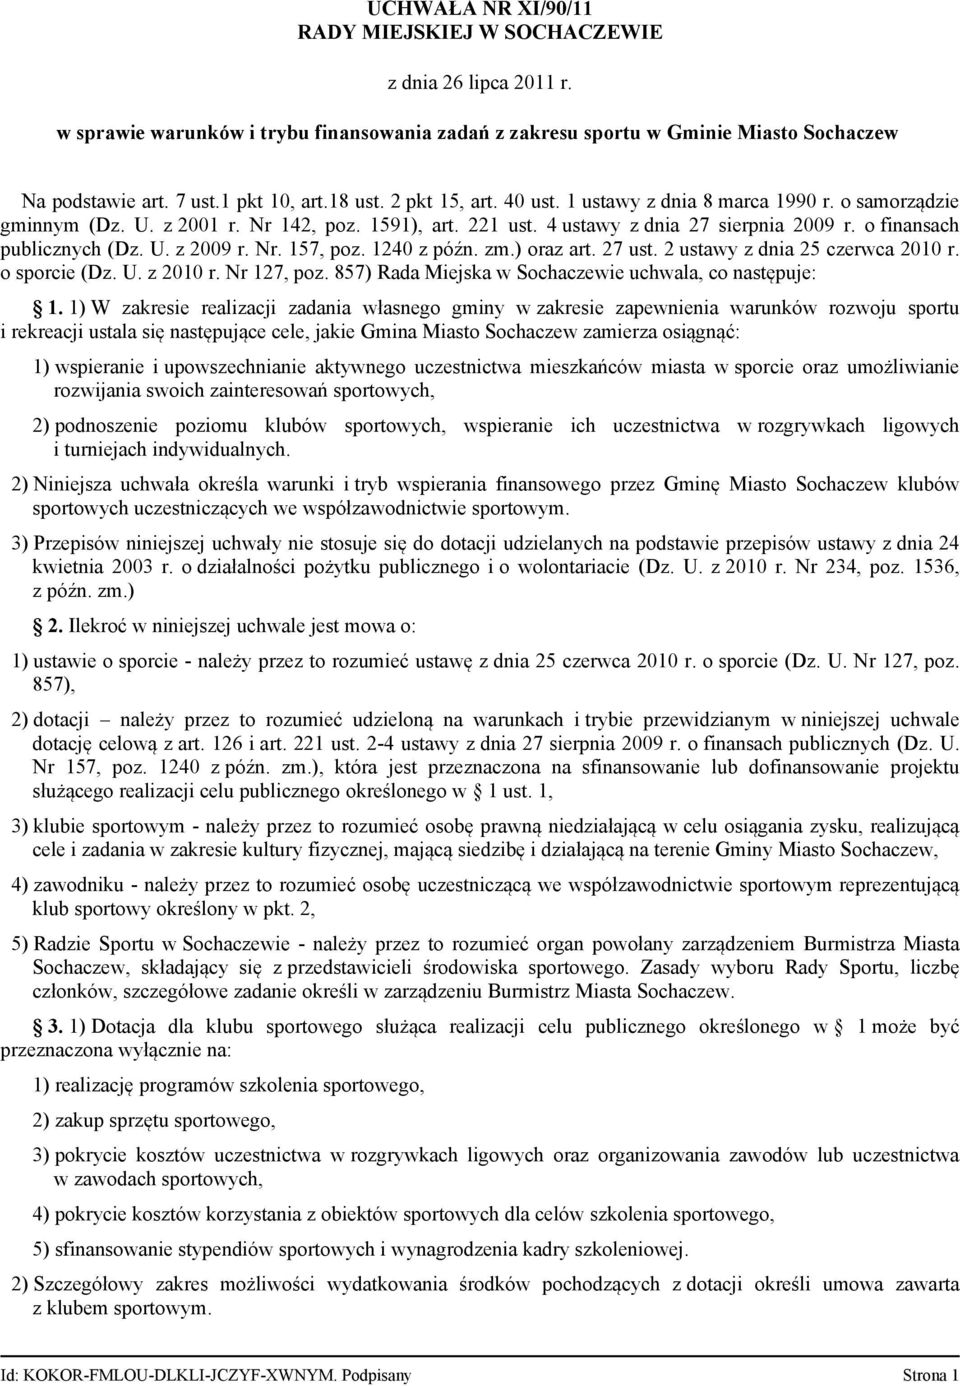 1240 z późn. zm.) oraz art. 27 ust. 2 ustawy z dnia 25 czerwca 2010 r. o sporcie (Dz. U. z 2010 r. Nr 127, poz. 857) Rada Miejska w Sochaczewie uchwala, co następuje: 1.